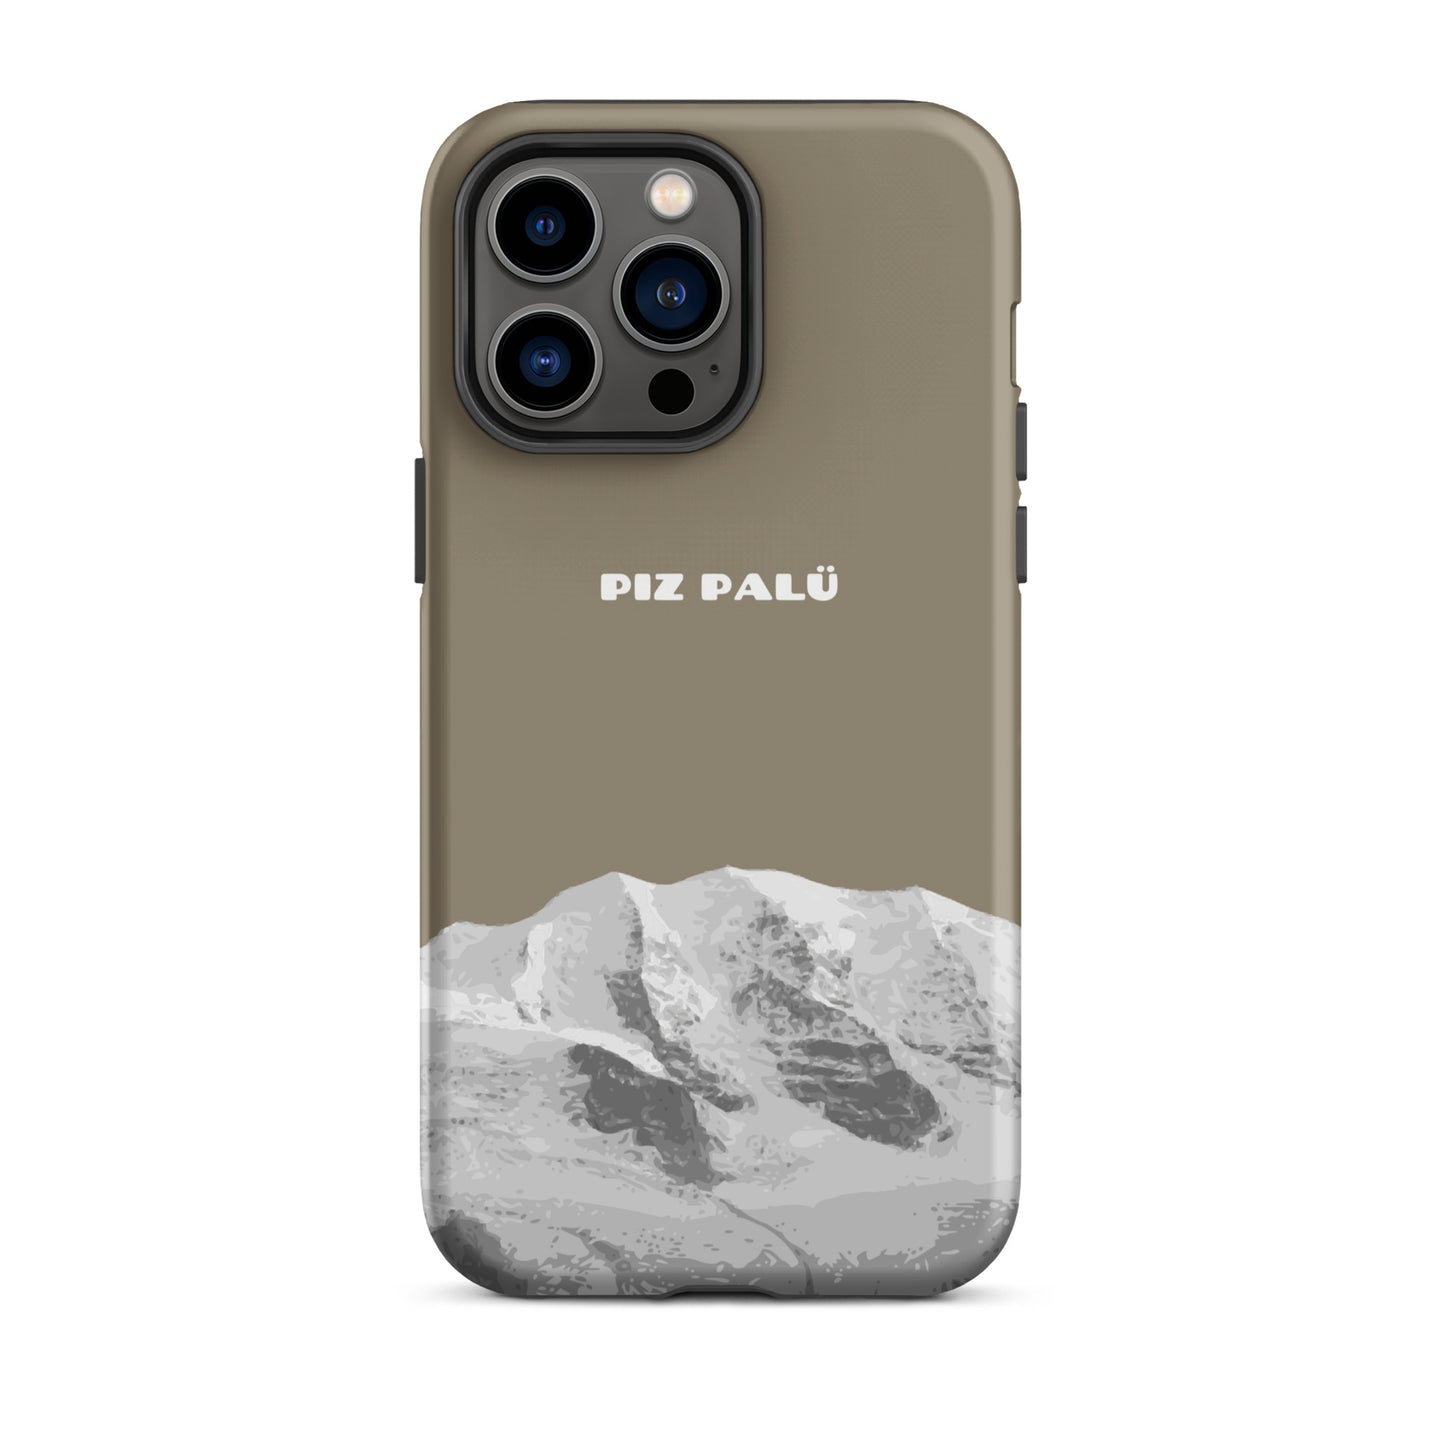 Hülle für das iPhone 14 Pro Max von Apple in der Farbe Graubrau, dass den Piz Palü in Graubünden zeigt.